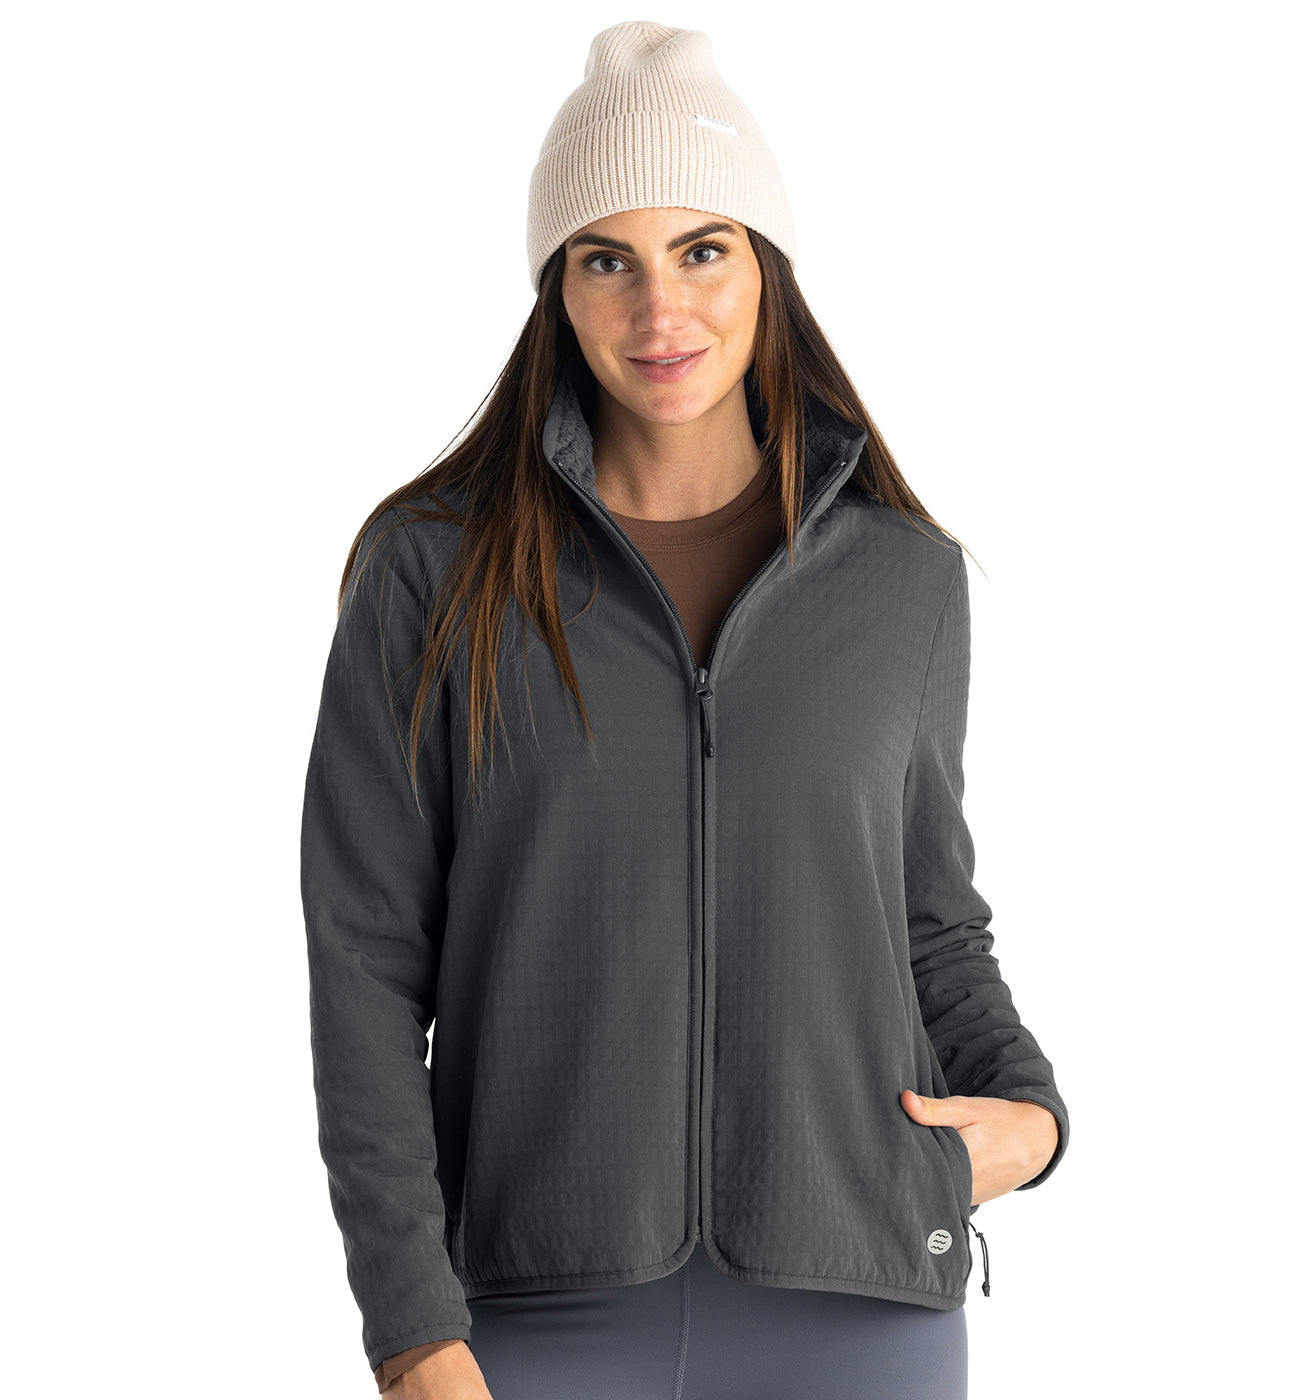 CODE-ZERO Jacket Women Waypoint Grey XS | CODE-ZERO